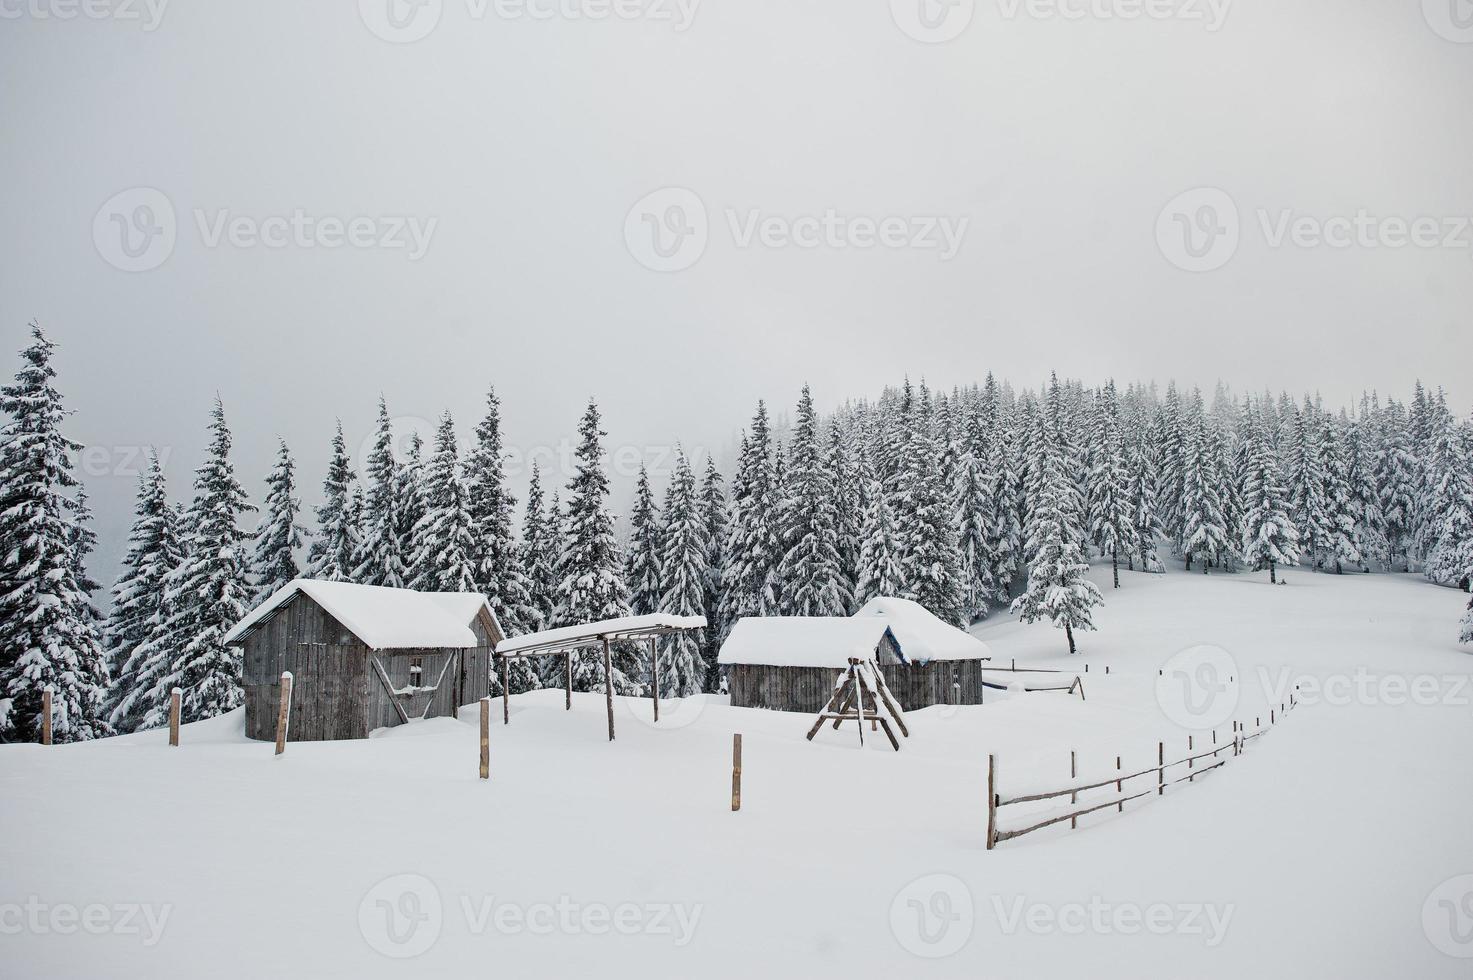 pinos cubiertos de nieve con casa de madera en la montaña chomiak. hermosos paisajes invernales de las montañas de los cárpatos, ucrania. naturaleza helada. foto